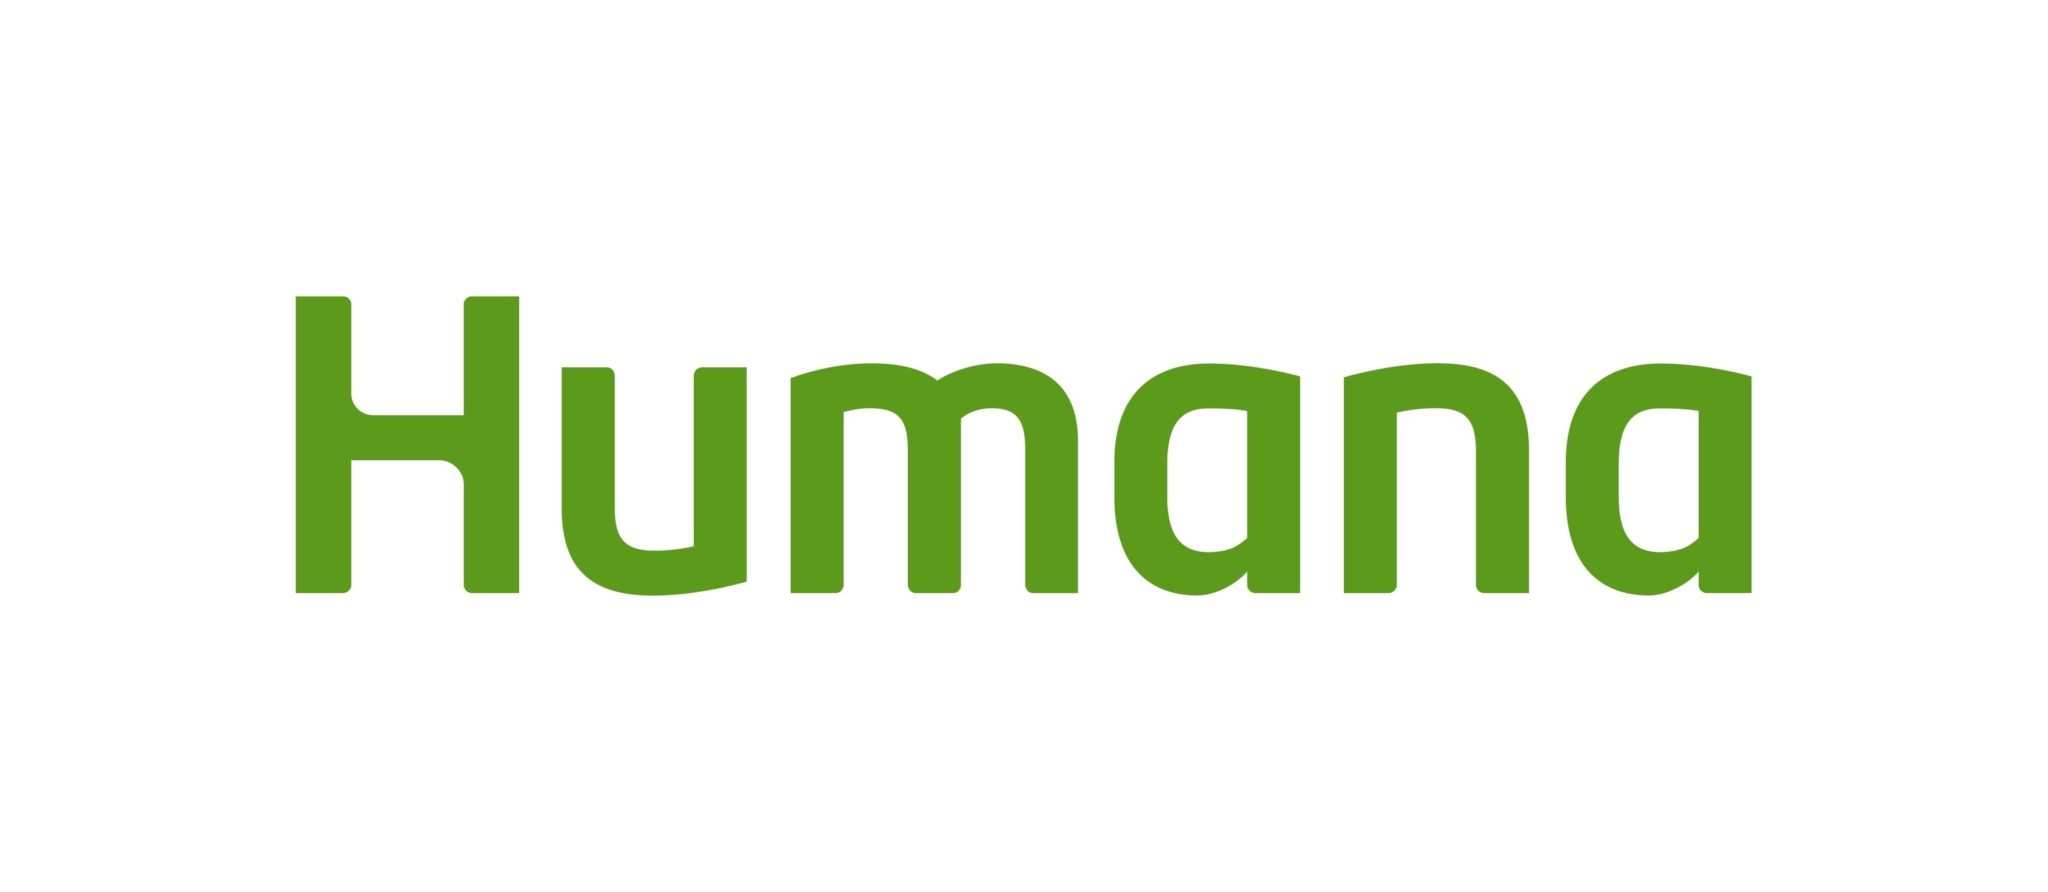 Humana Insurance logo